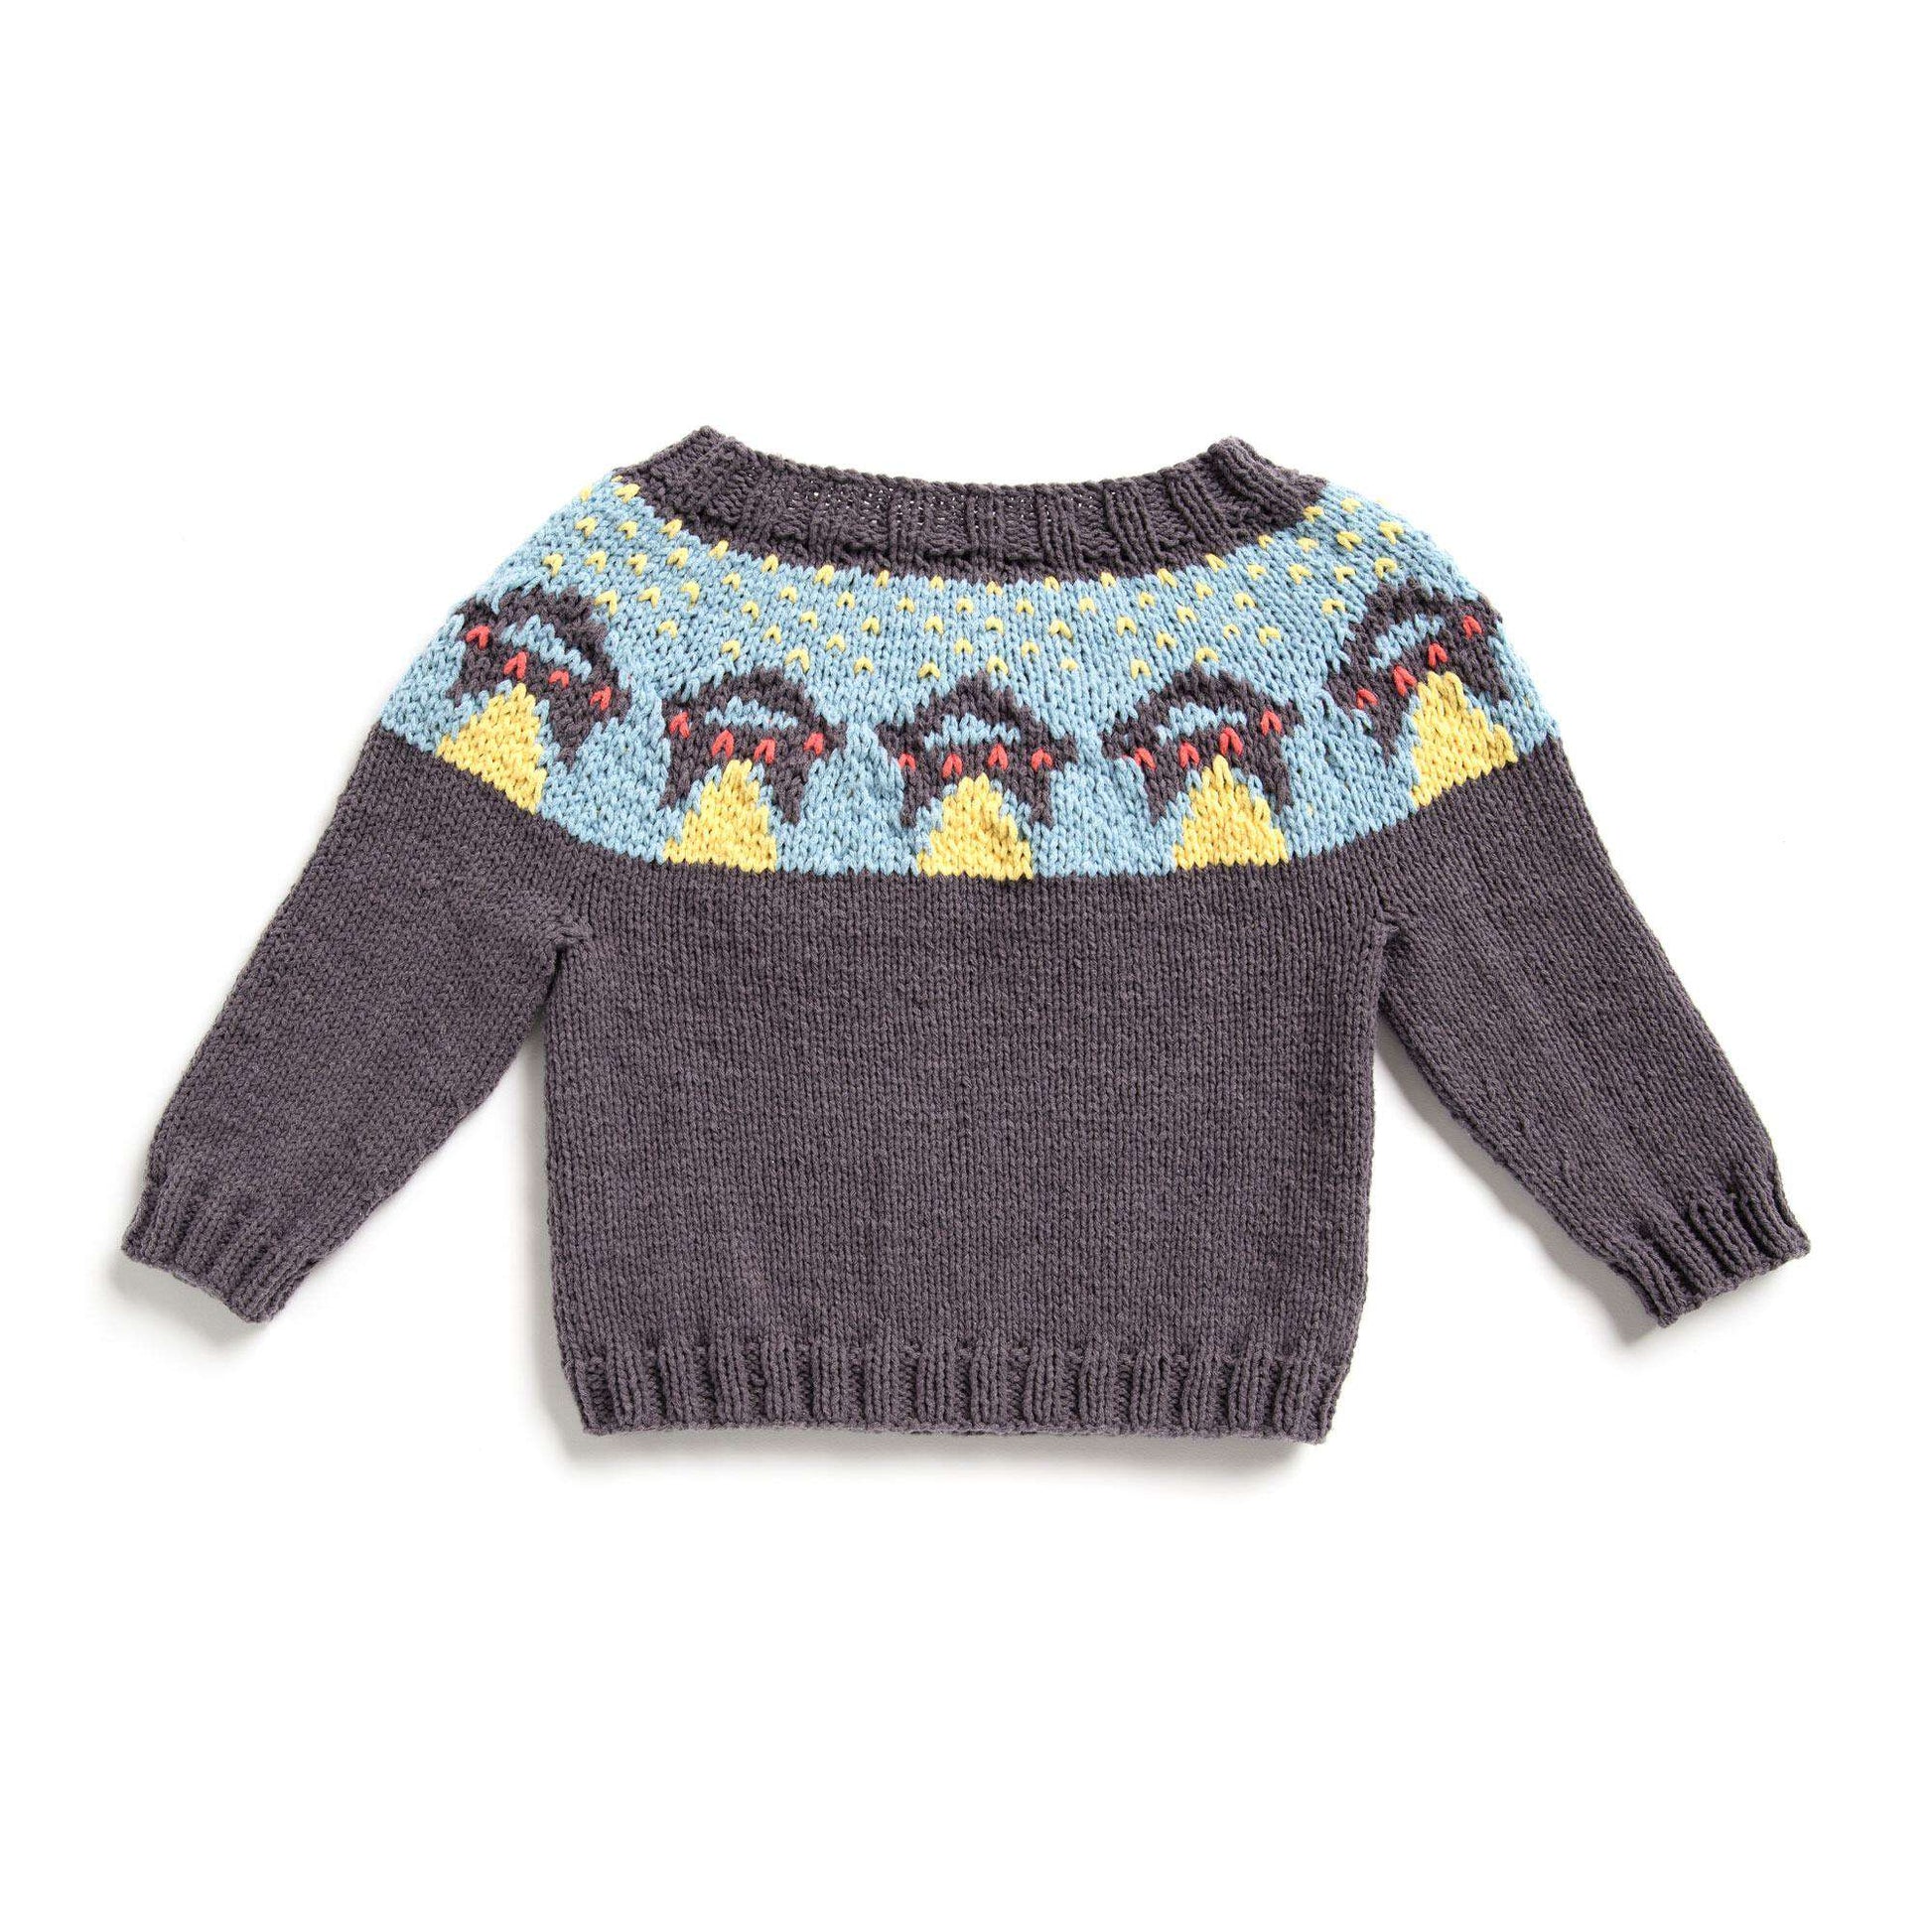 Free Bernat Ufo Yoke Knit Sweater Pattern